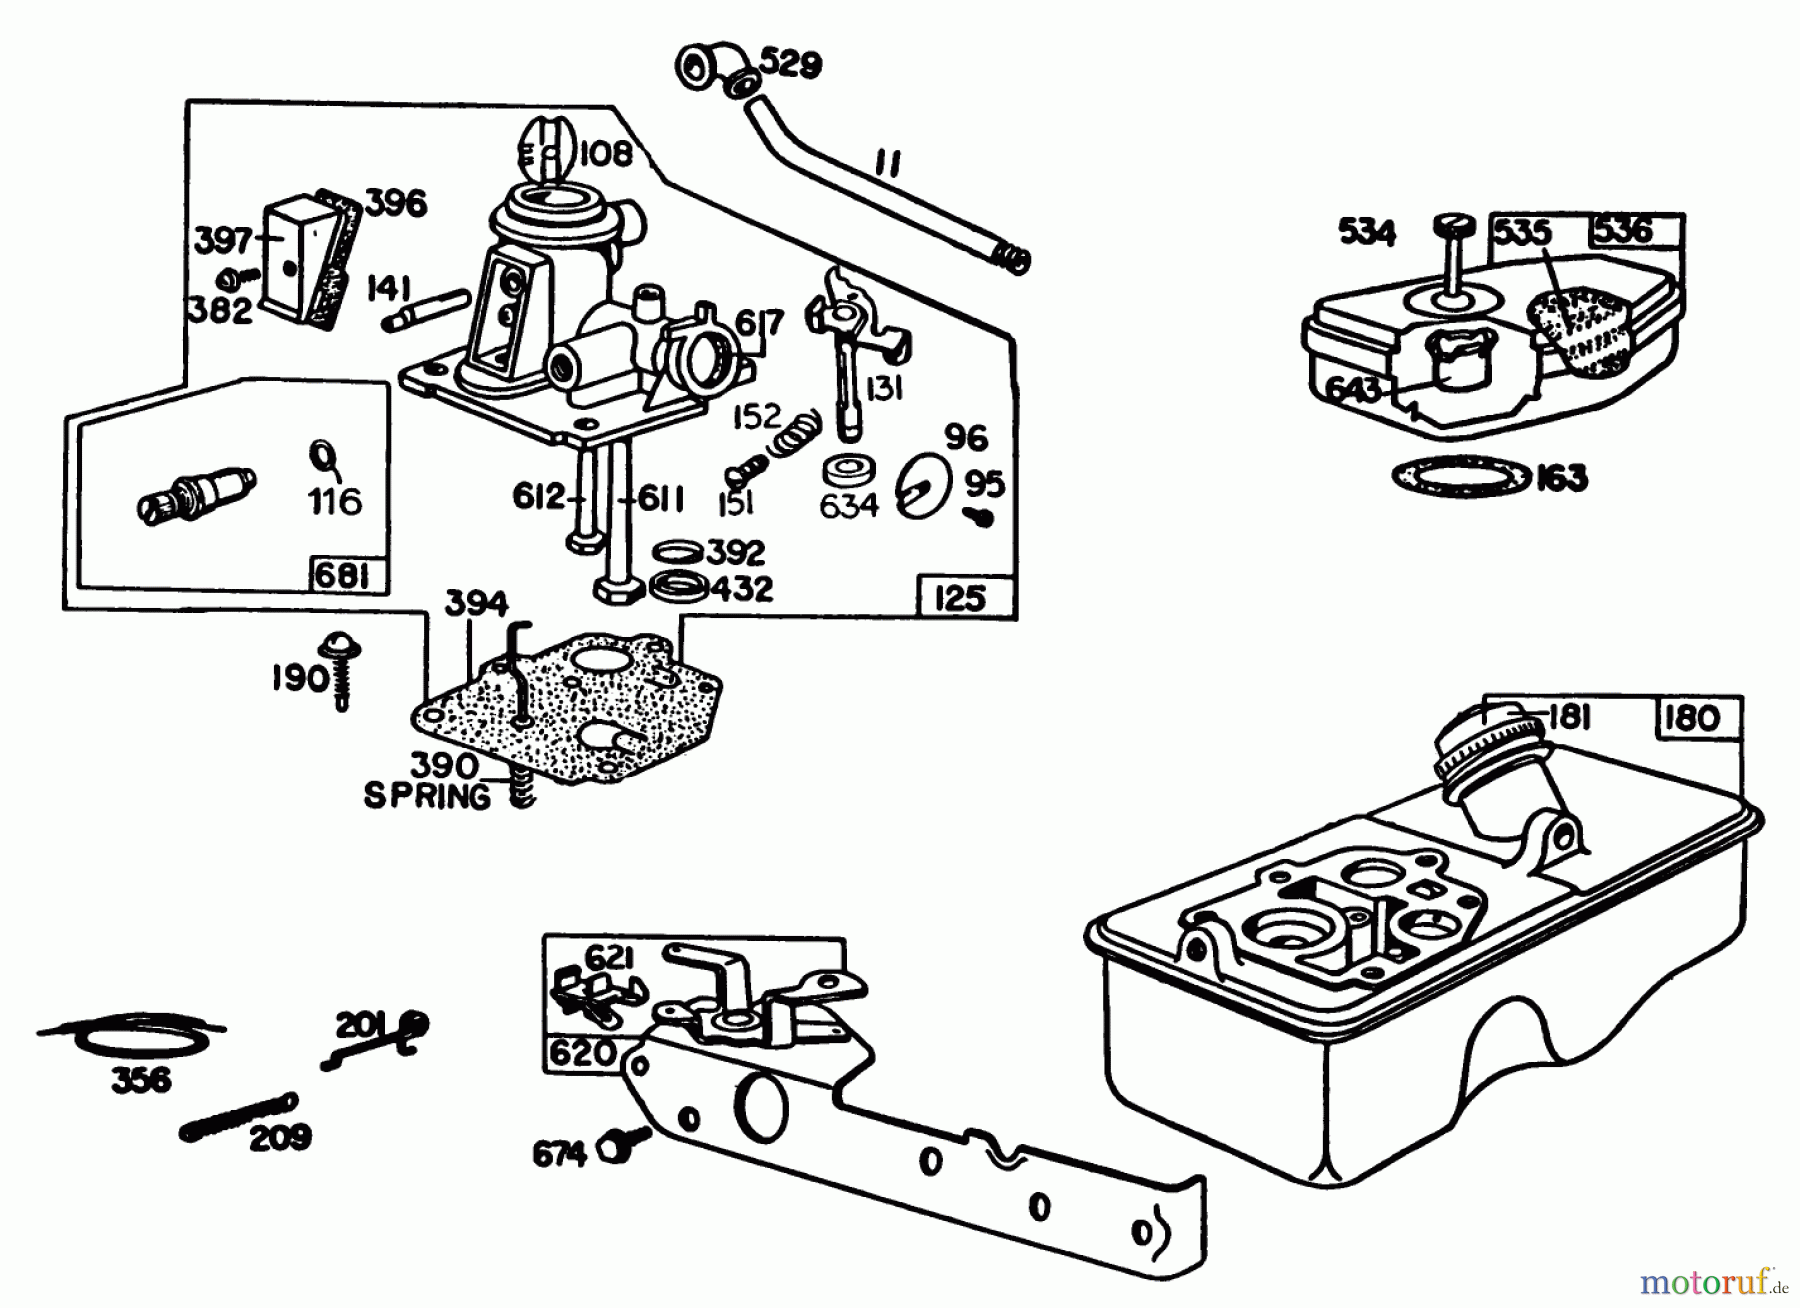  Toro Neu Mowers, Walk-Behind Seite 1 20742C - Toro Lawnmower, 1985 (5000001-5999999) ENGINE BRIGGS & STRATTON MODEL 92908-5205-01 #1